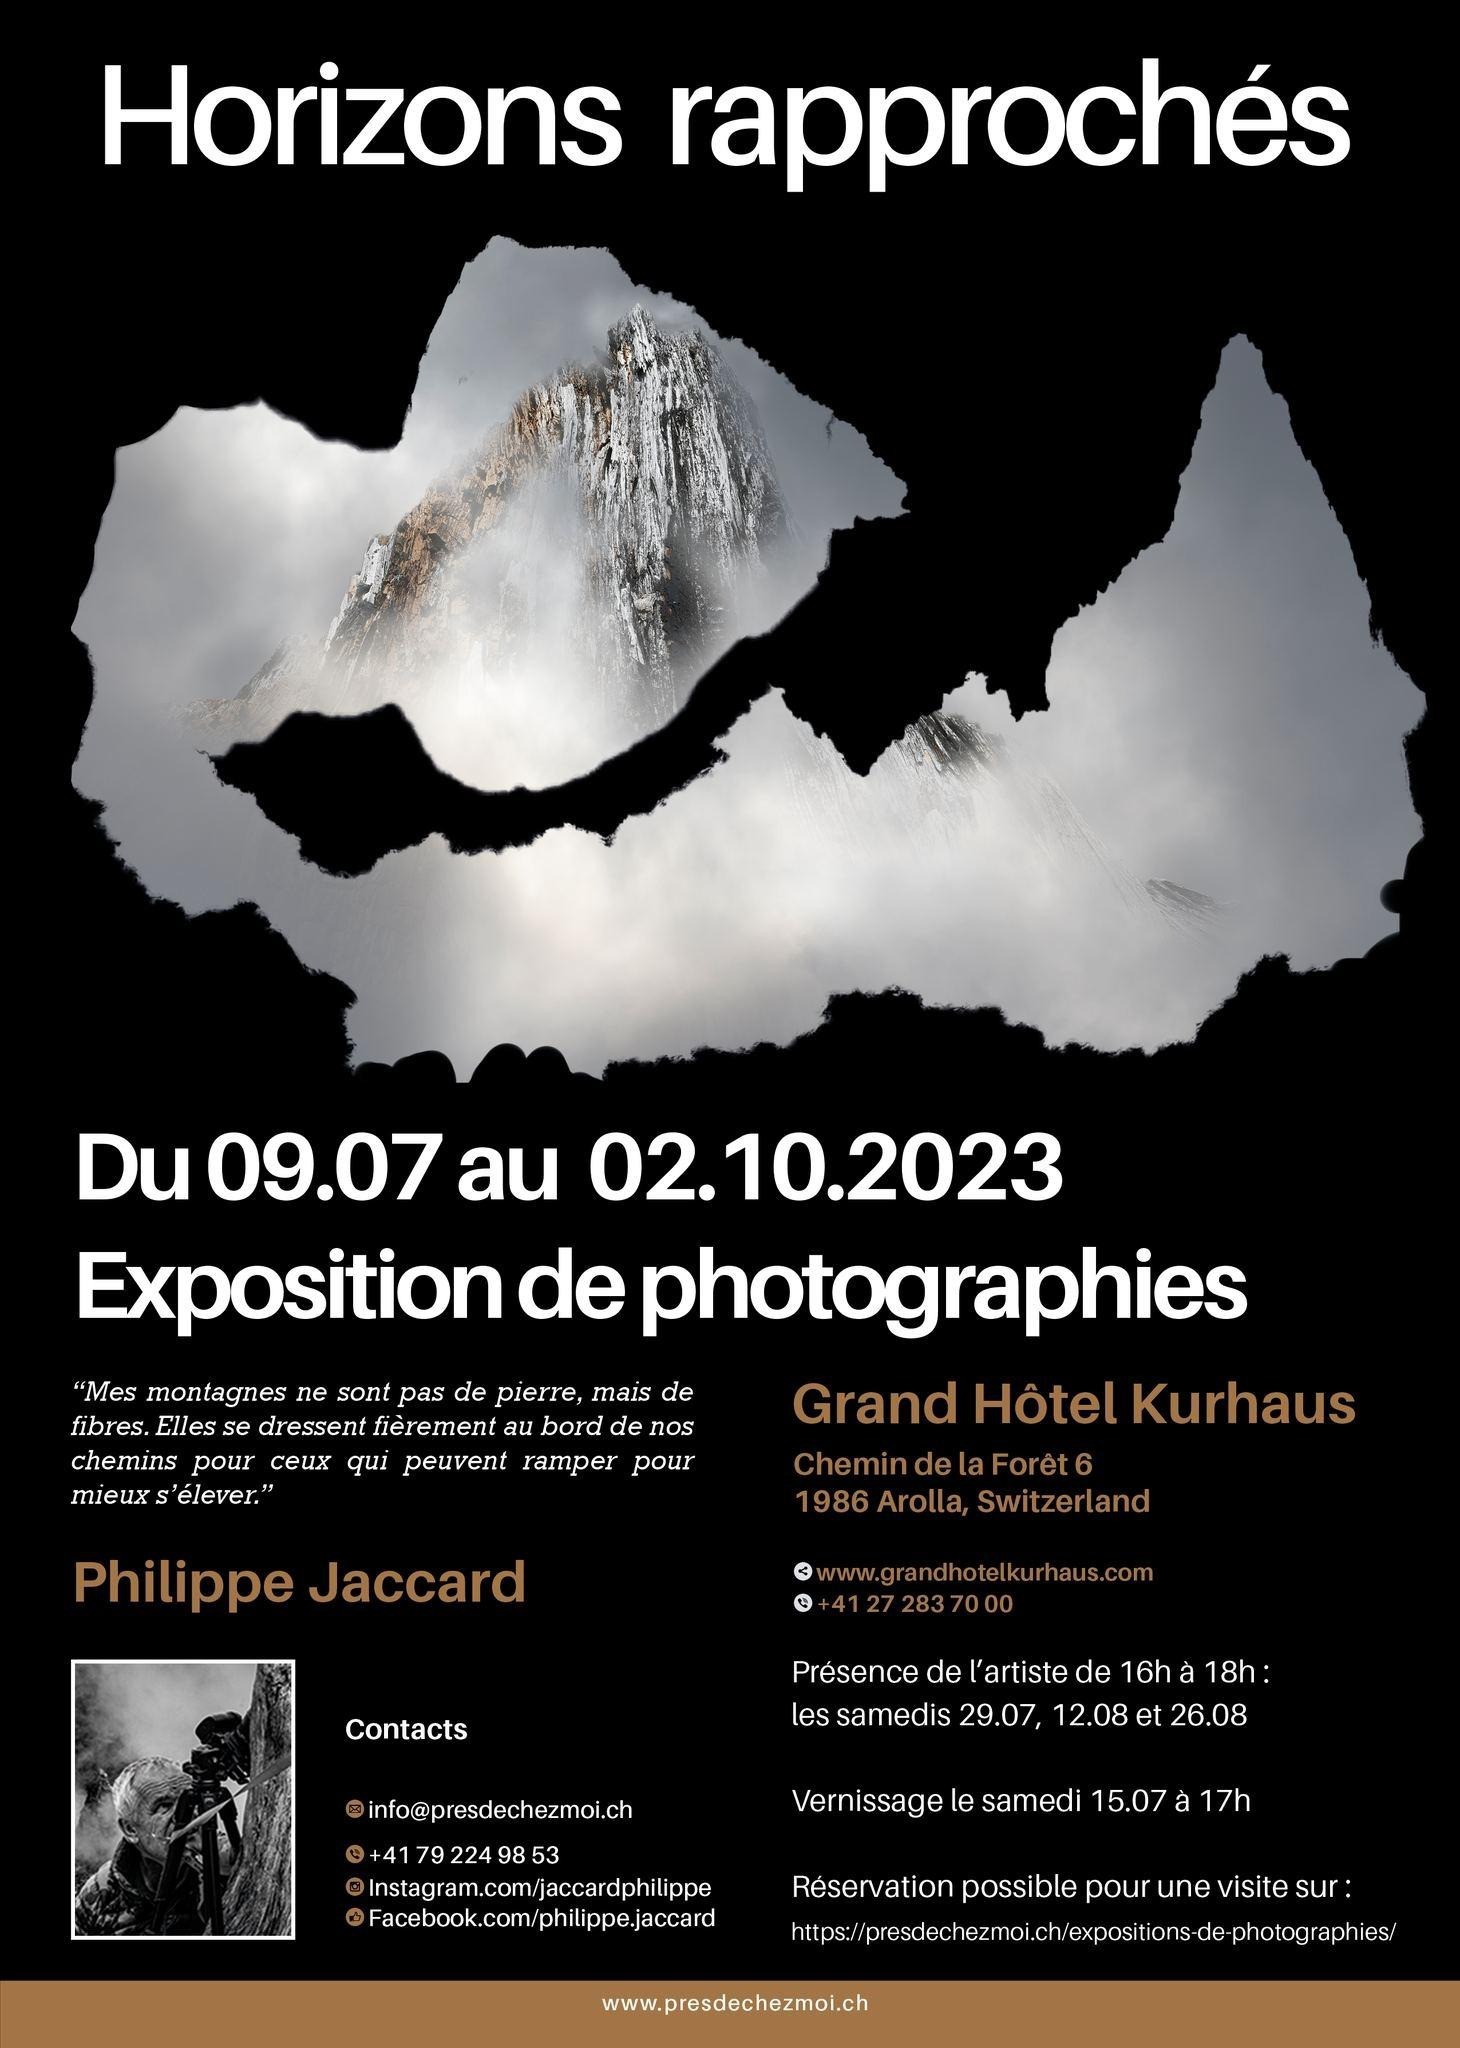 Horizons rapprochés : Une exposition de photographies par Philippe Jaccard